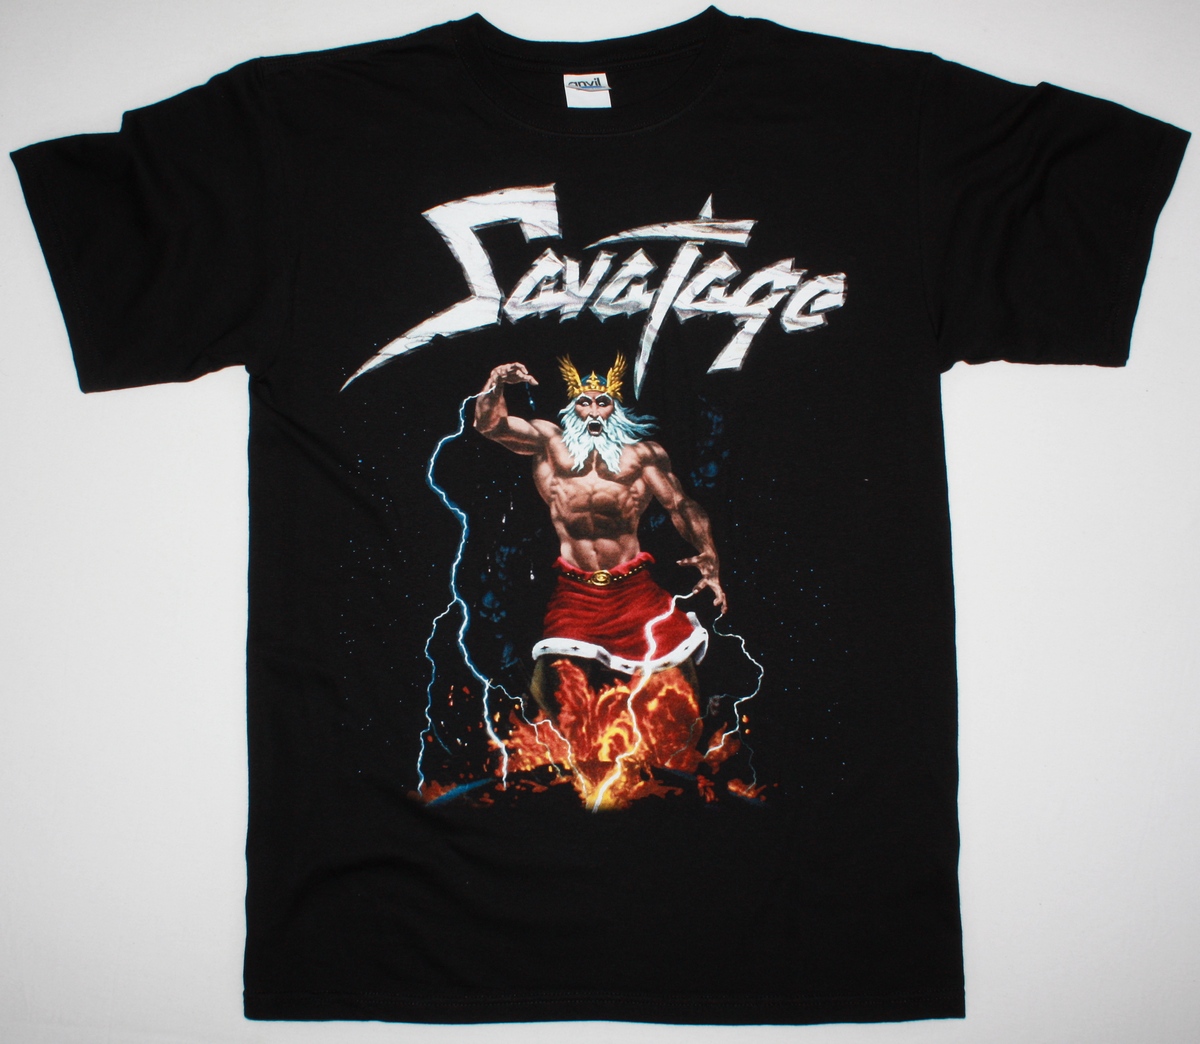 SAVATAGE TOTAL DEVASTATION HEAVY PROGRESSIVE METAL JON OLIVA NEW BLACK T- SHIRT - Best Rock T-shirts